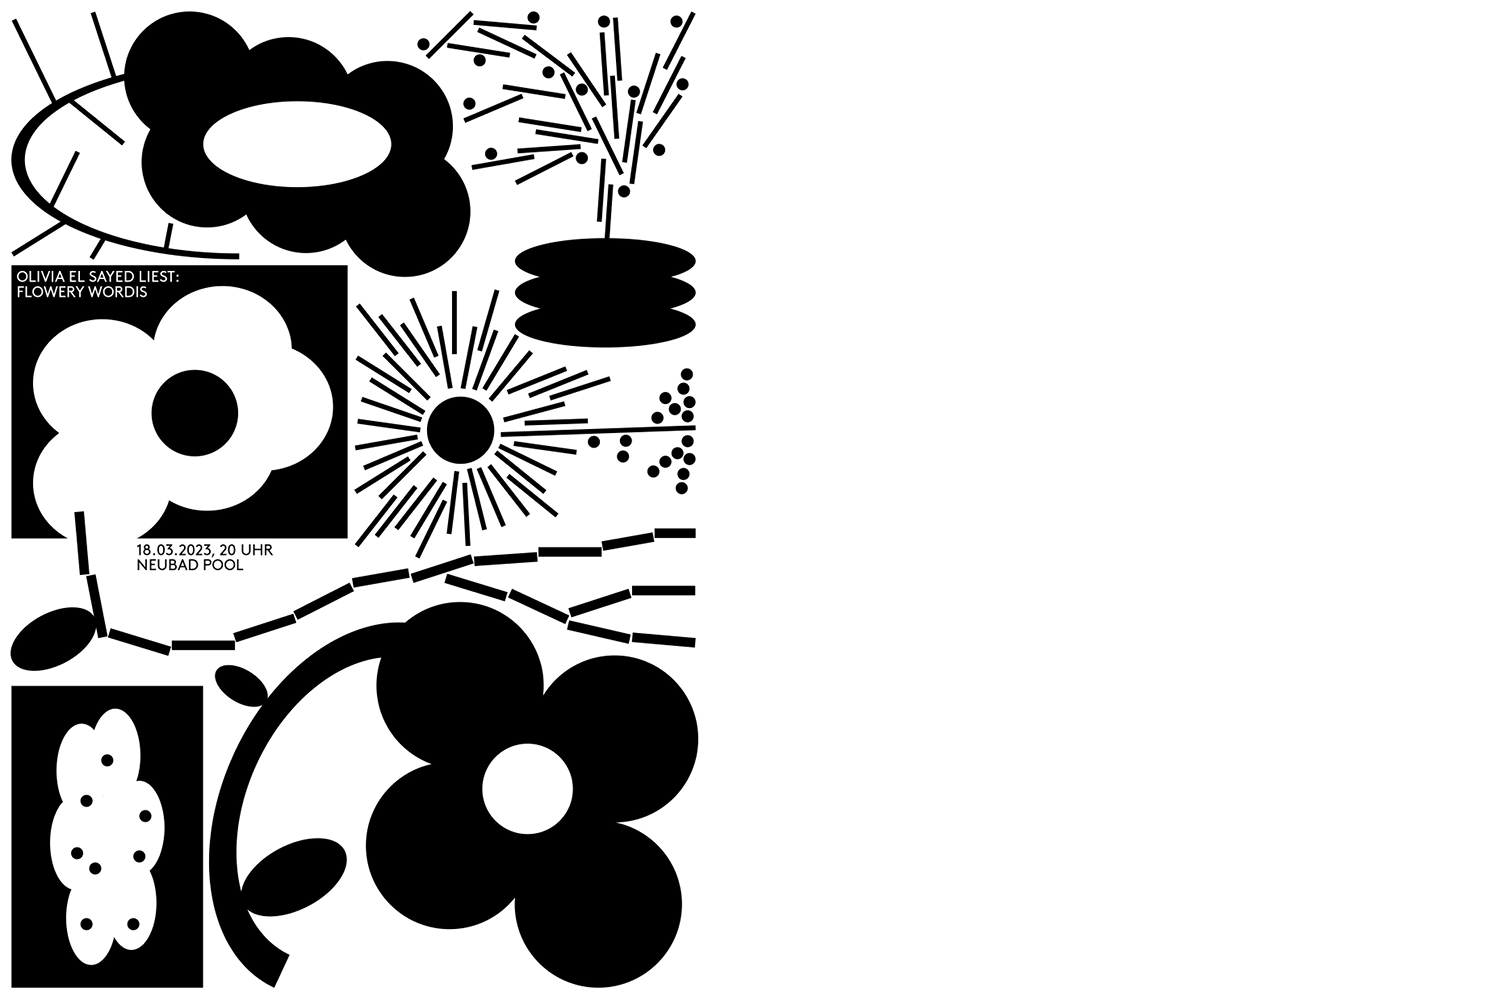 Plakat für die Lesung von Olivia El Sayed, welches verschiedene abstrakte Blumen in schwarz-weiss zeigt.